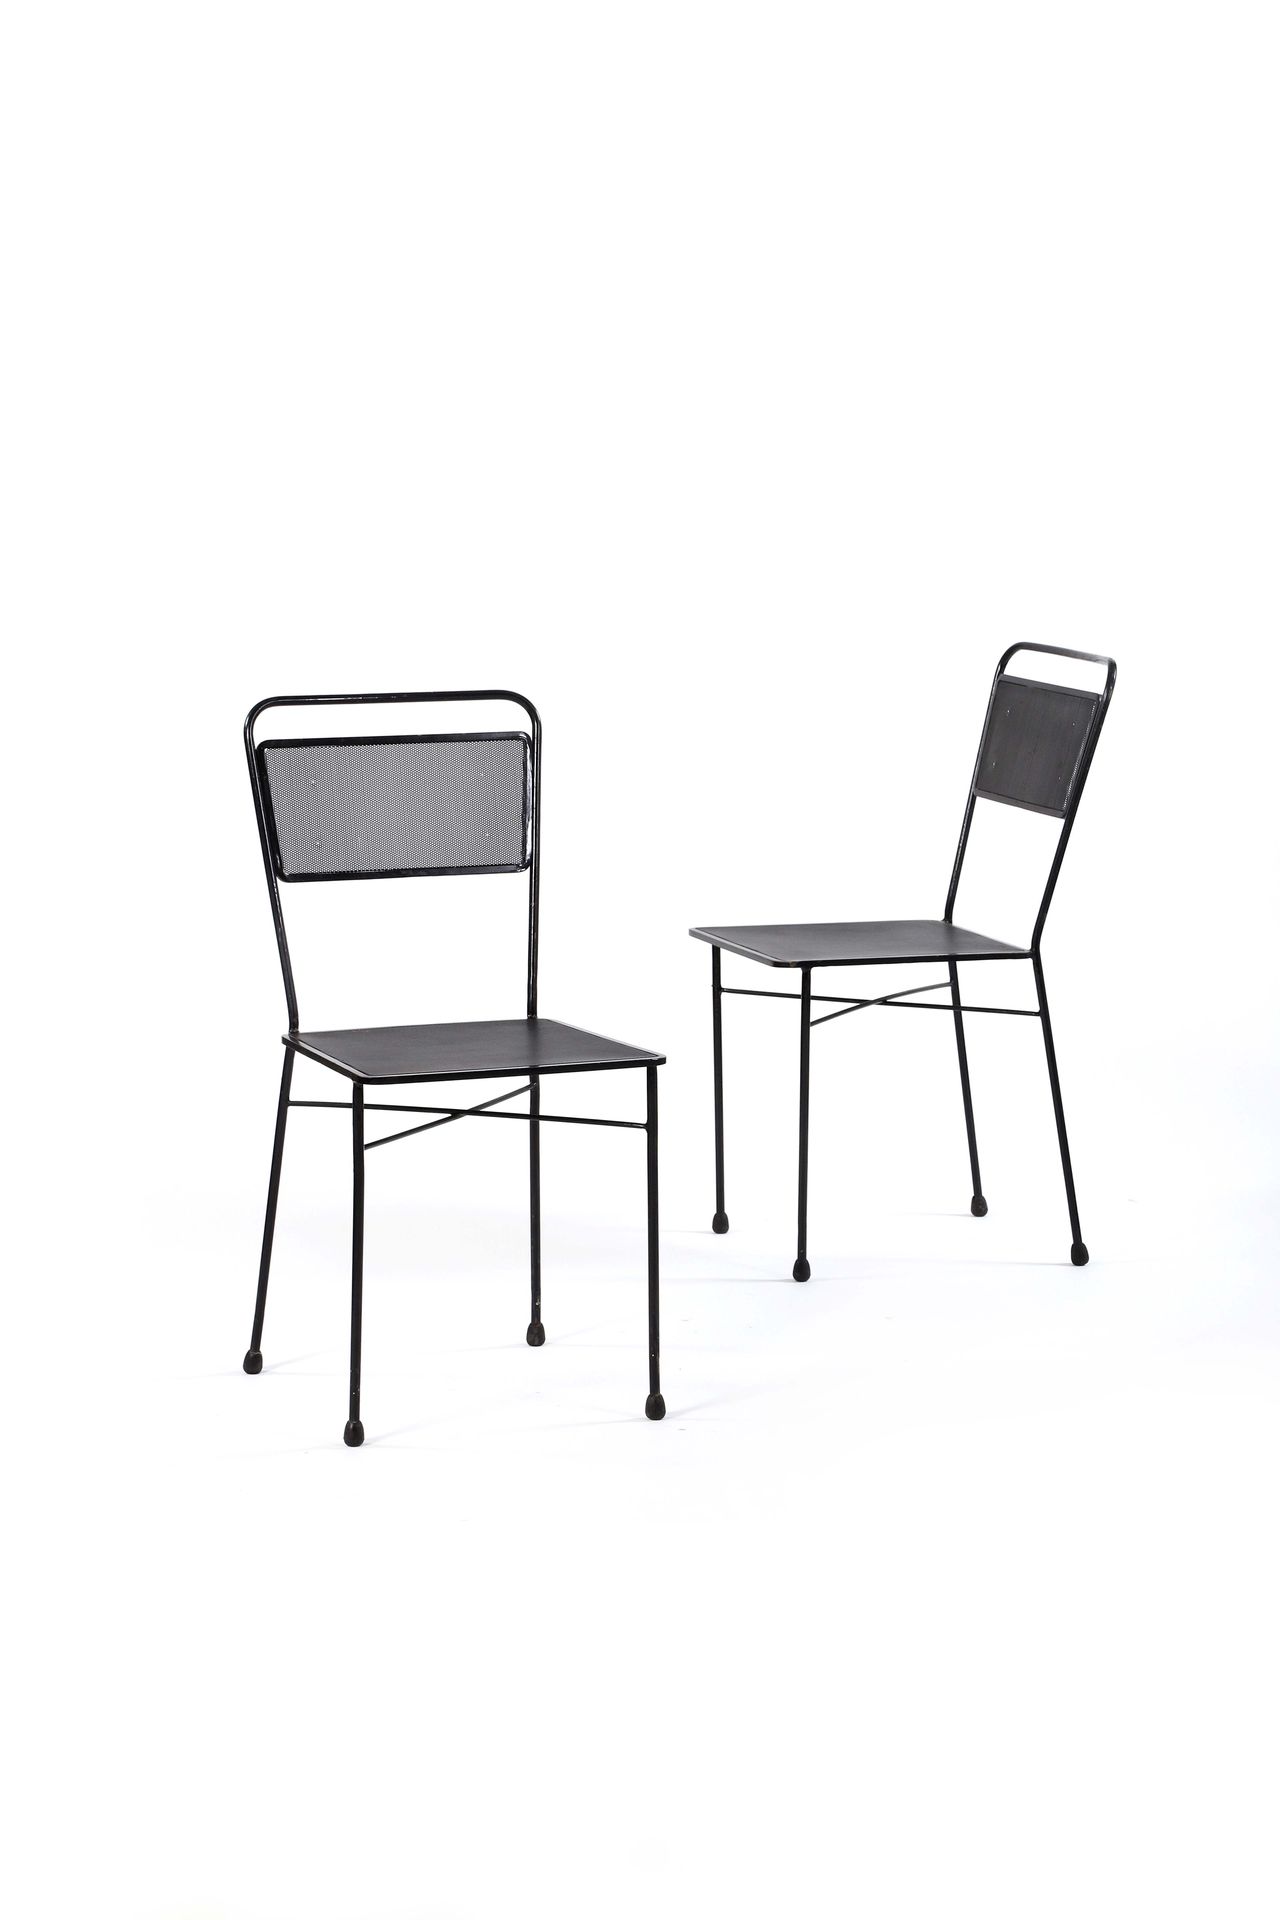 Null 32.

马蒂厄-马提戈

(1910-2001)

一对椅子

穿孔金属板

79 x 39 x 50厘米。

Ateliers Matégot, &hellip;